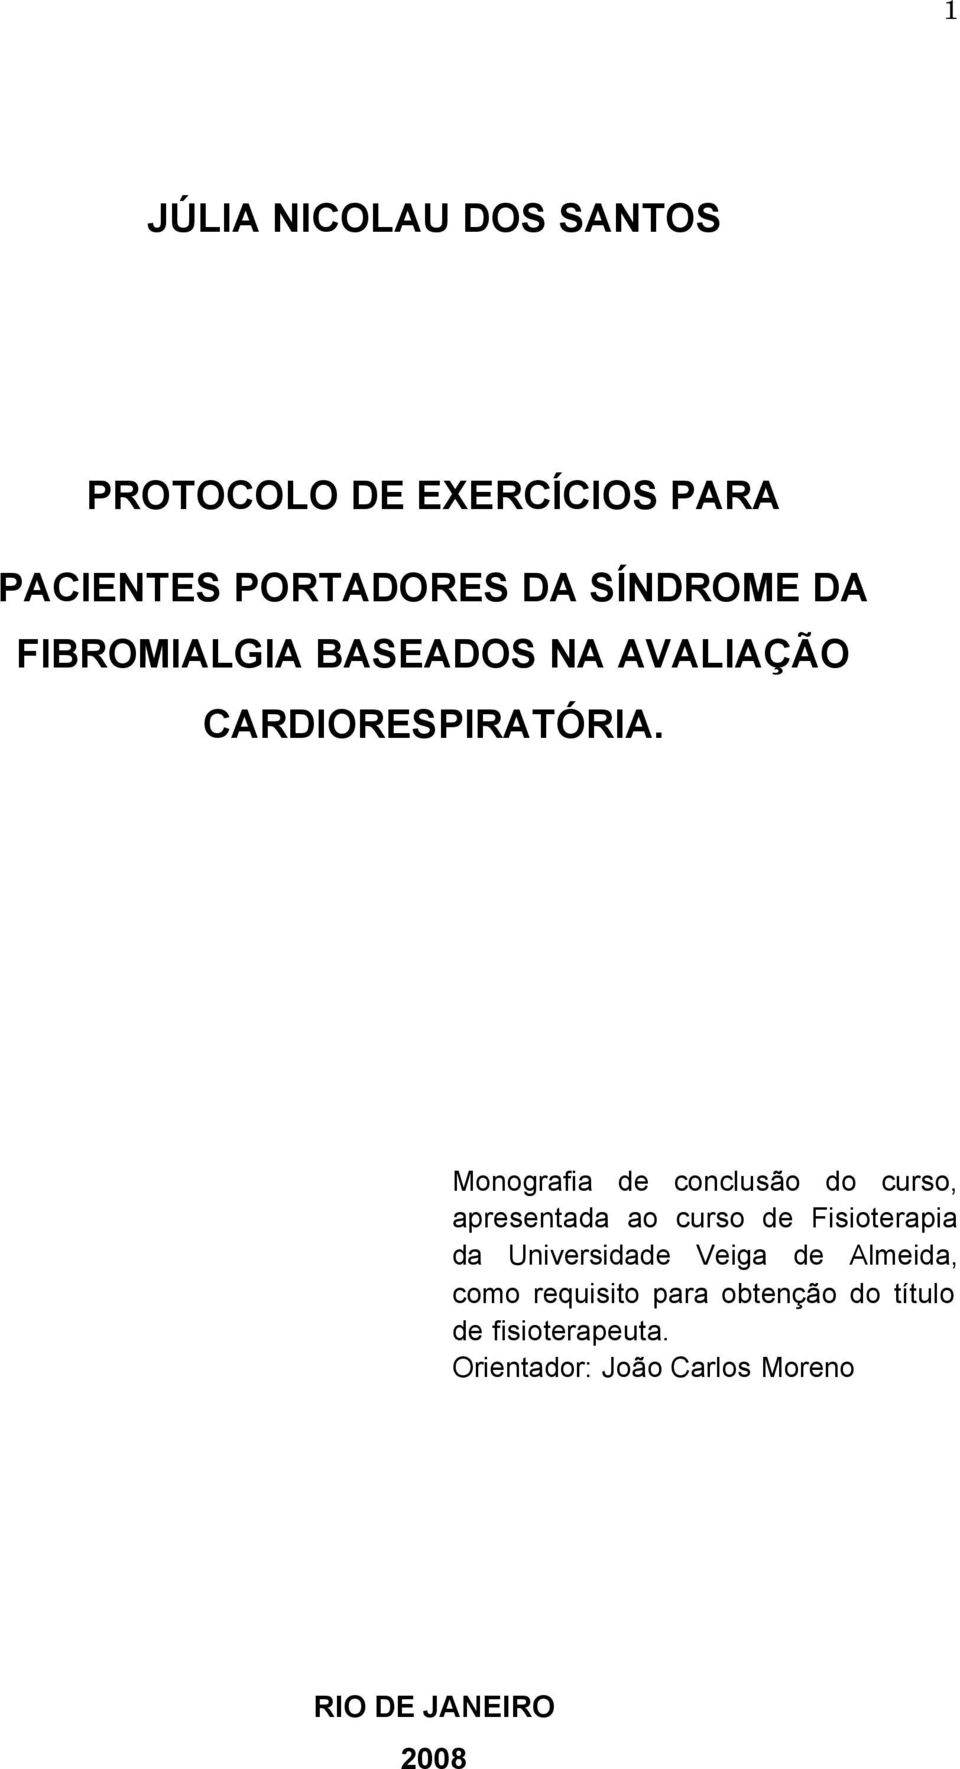 Monografia de conclusão do curso, apresentada ao curso de Fisioterapia da Universidade